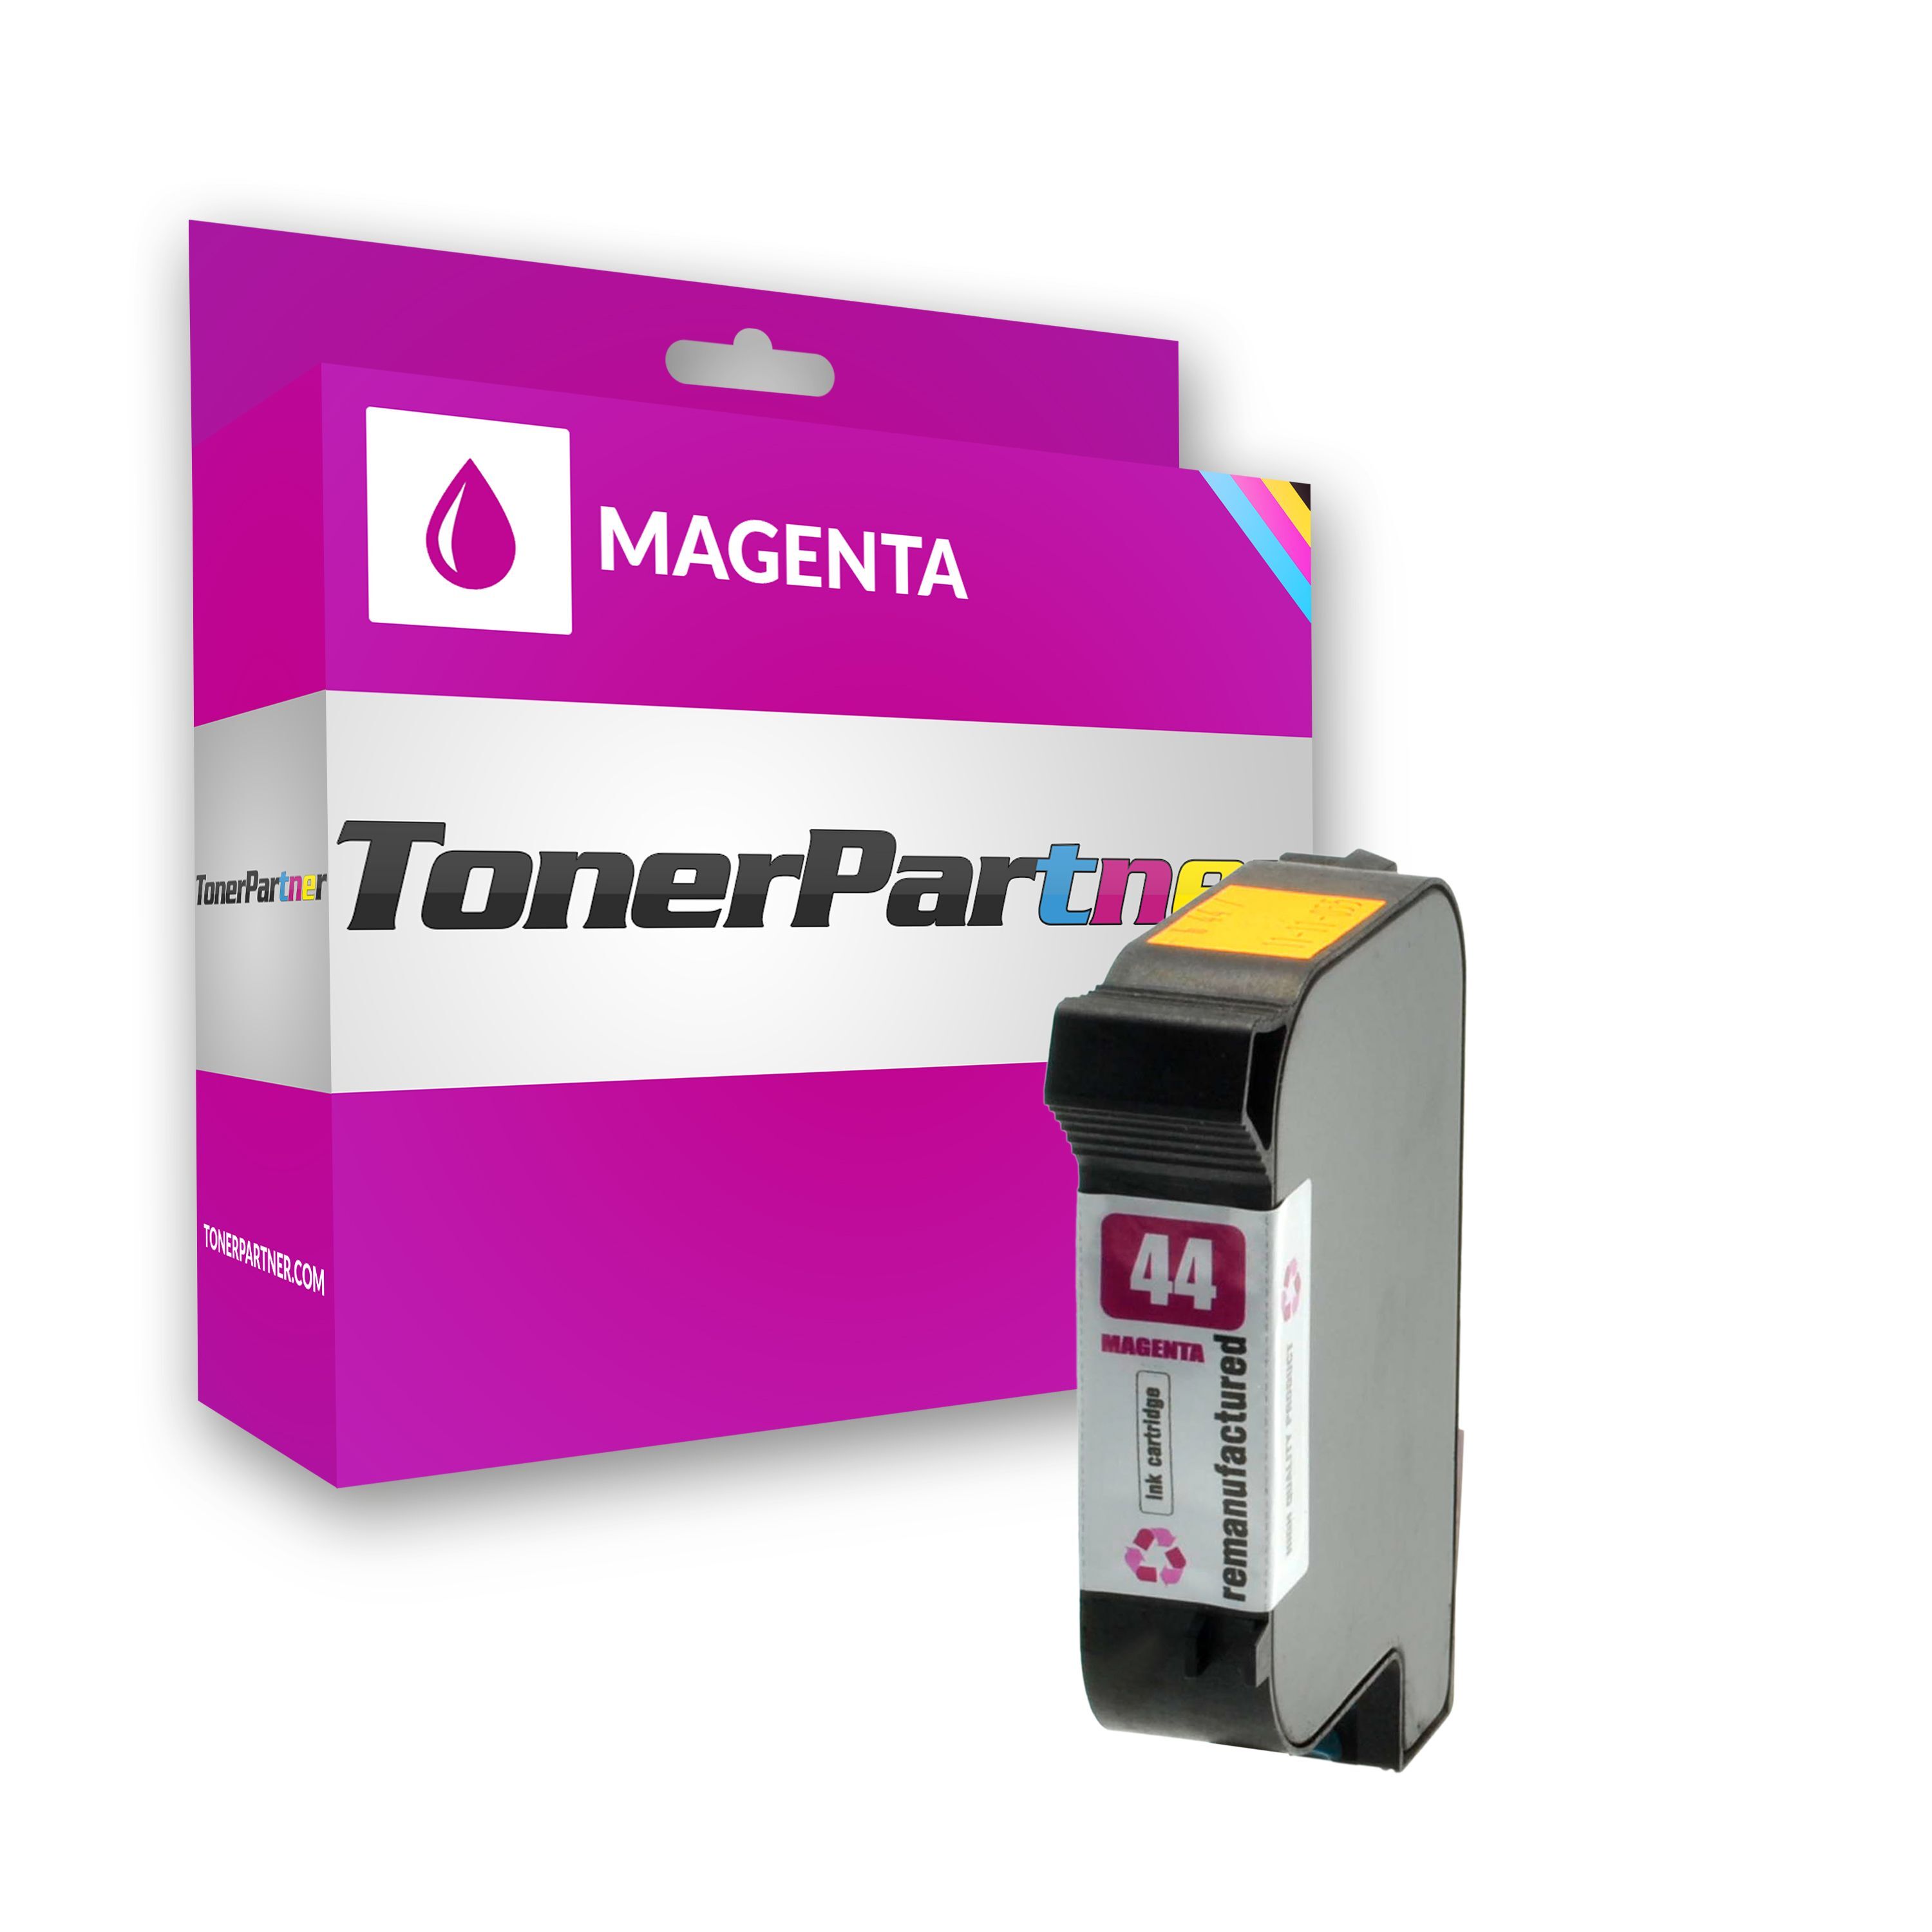 TonerPartner Kompatibel zu HP 51644 ME / 44 Tintenpatrone magenta, 1.600 Seiten, 1,59 Rp pro Seite, Inhalt: 42 ml von TonerPartner